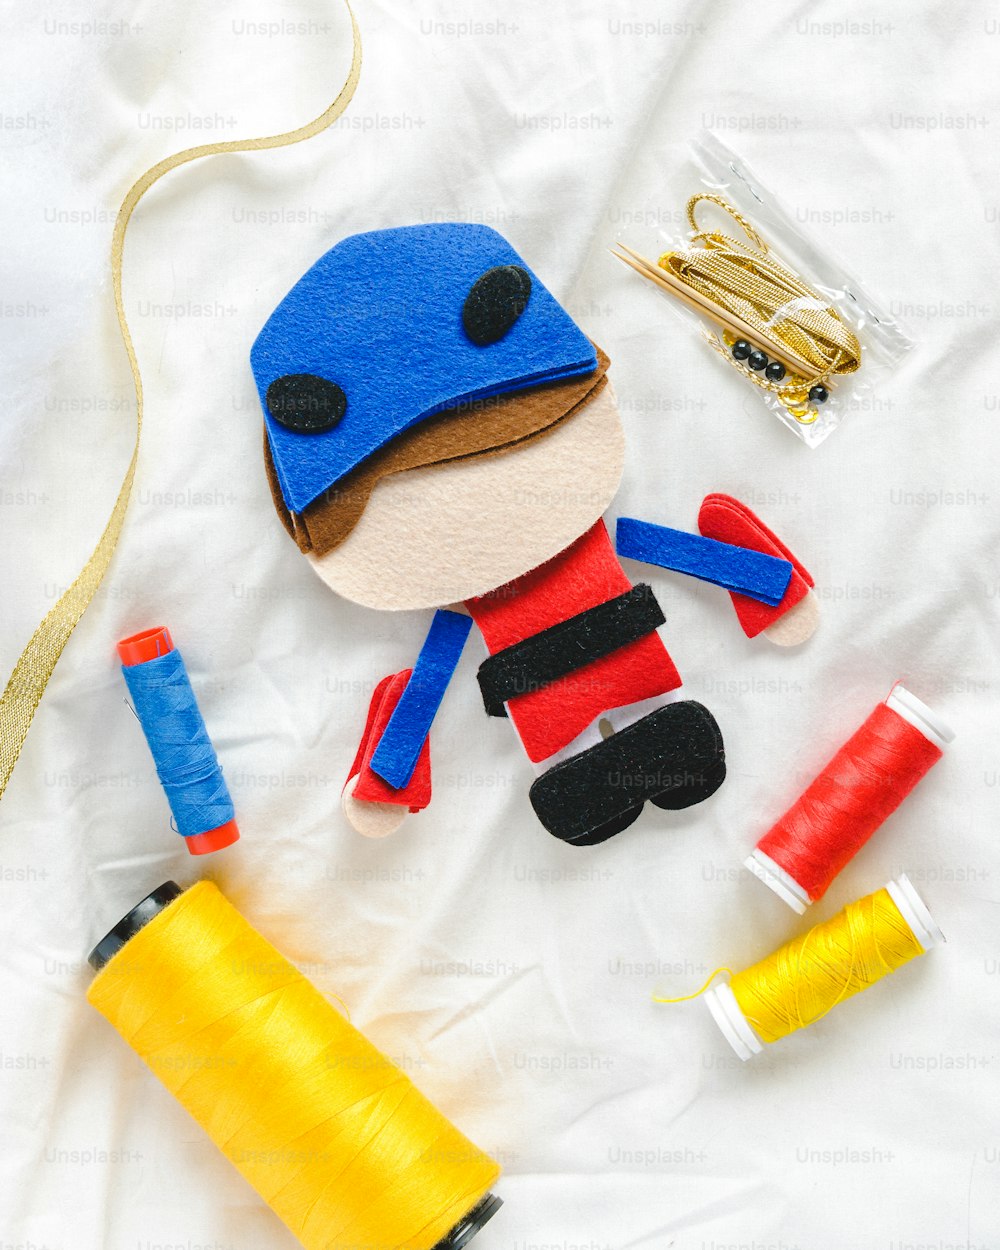 파란 모자와 노란 실 스풀이 달린 장난감